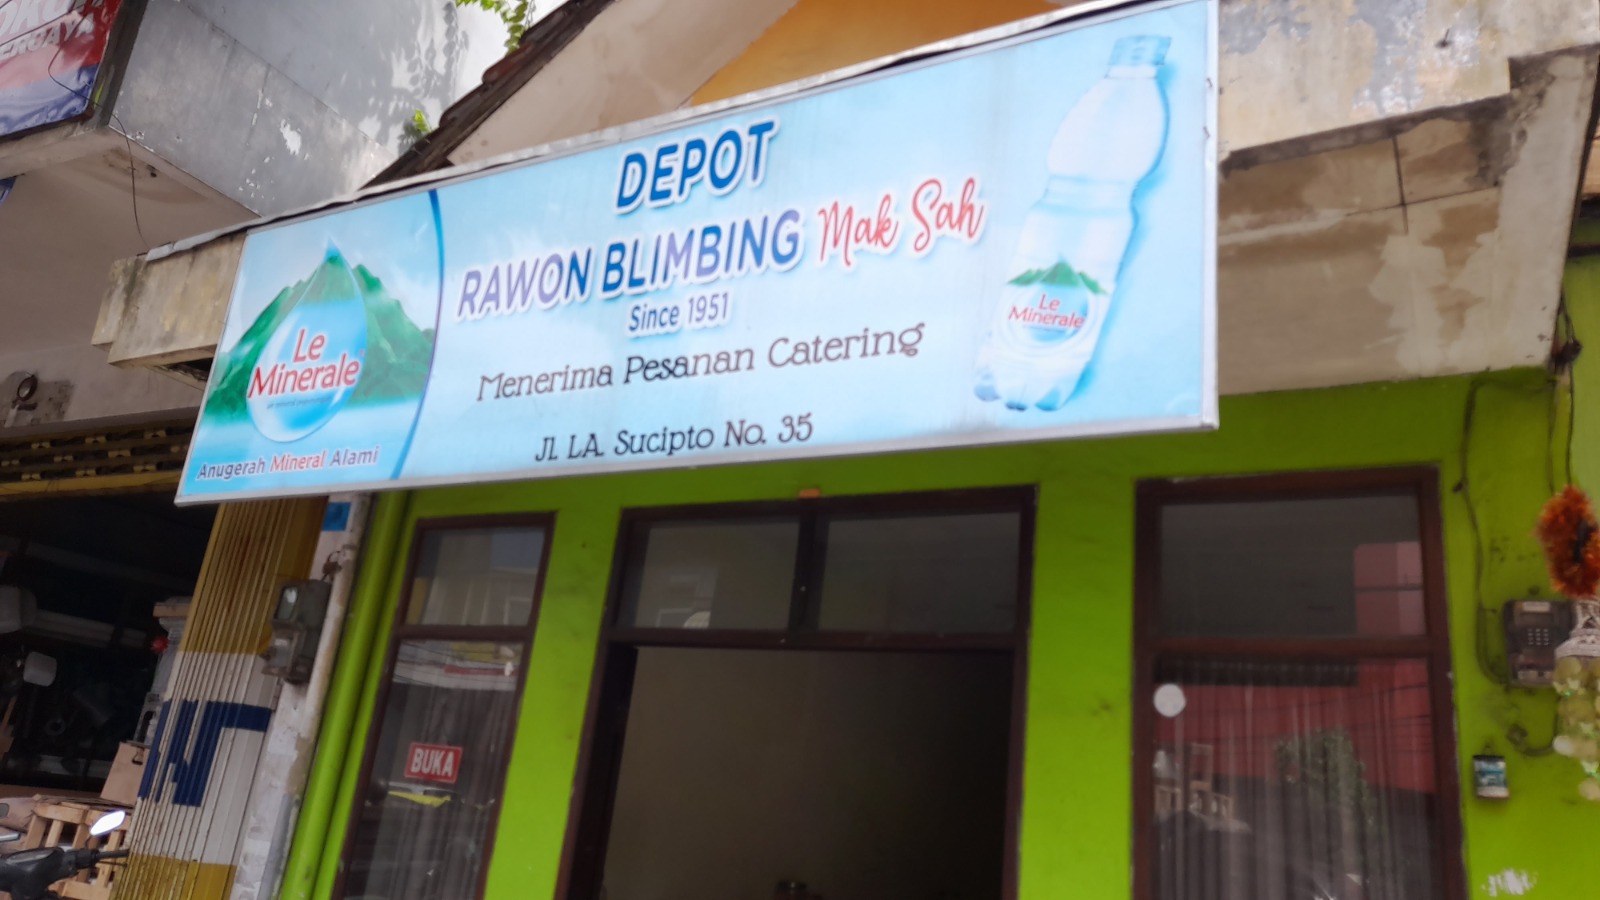 Depot rawon Mak Sah, melegenda sejak 1951. 